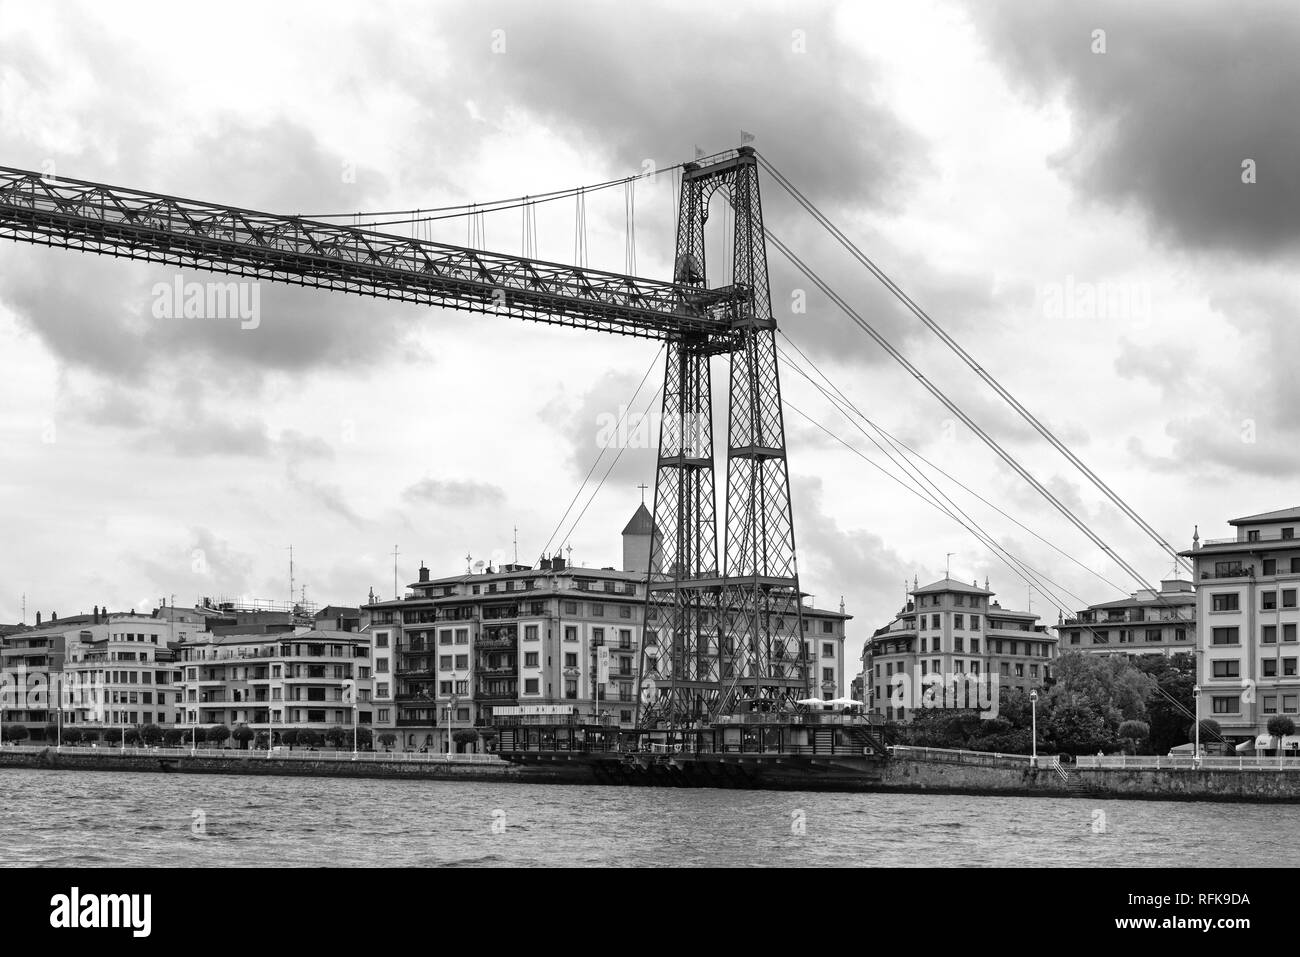 Le pont suspendu de Biscaye (Puente de Vizcaya) entre getxo et portugalete sur la ria de Bilbao, noir et blanc Banque D'Images